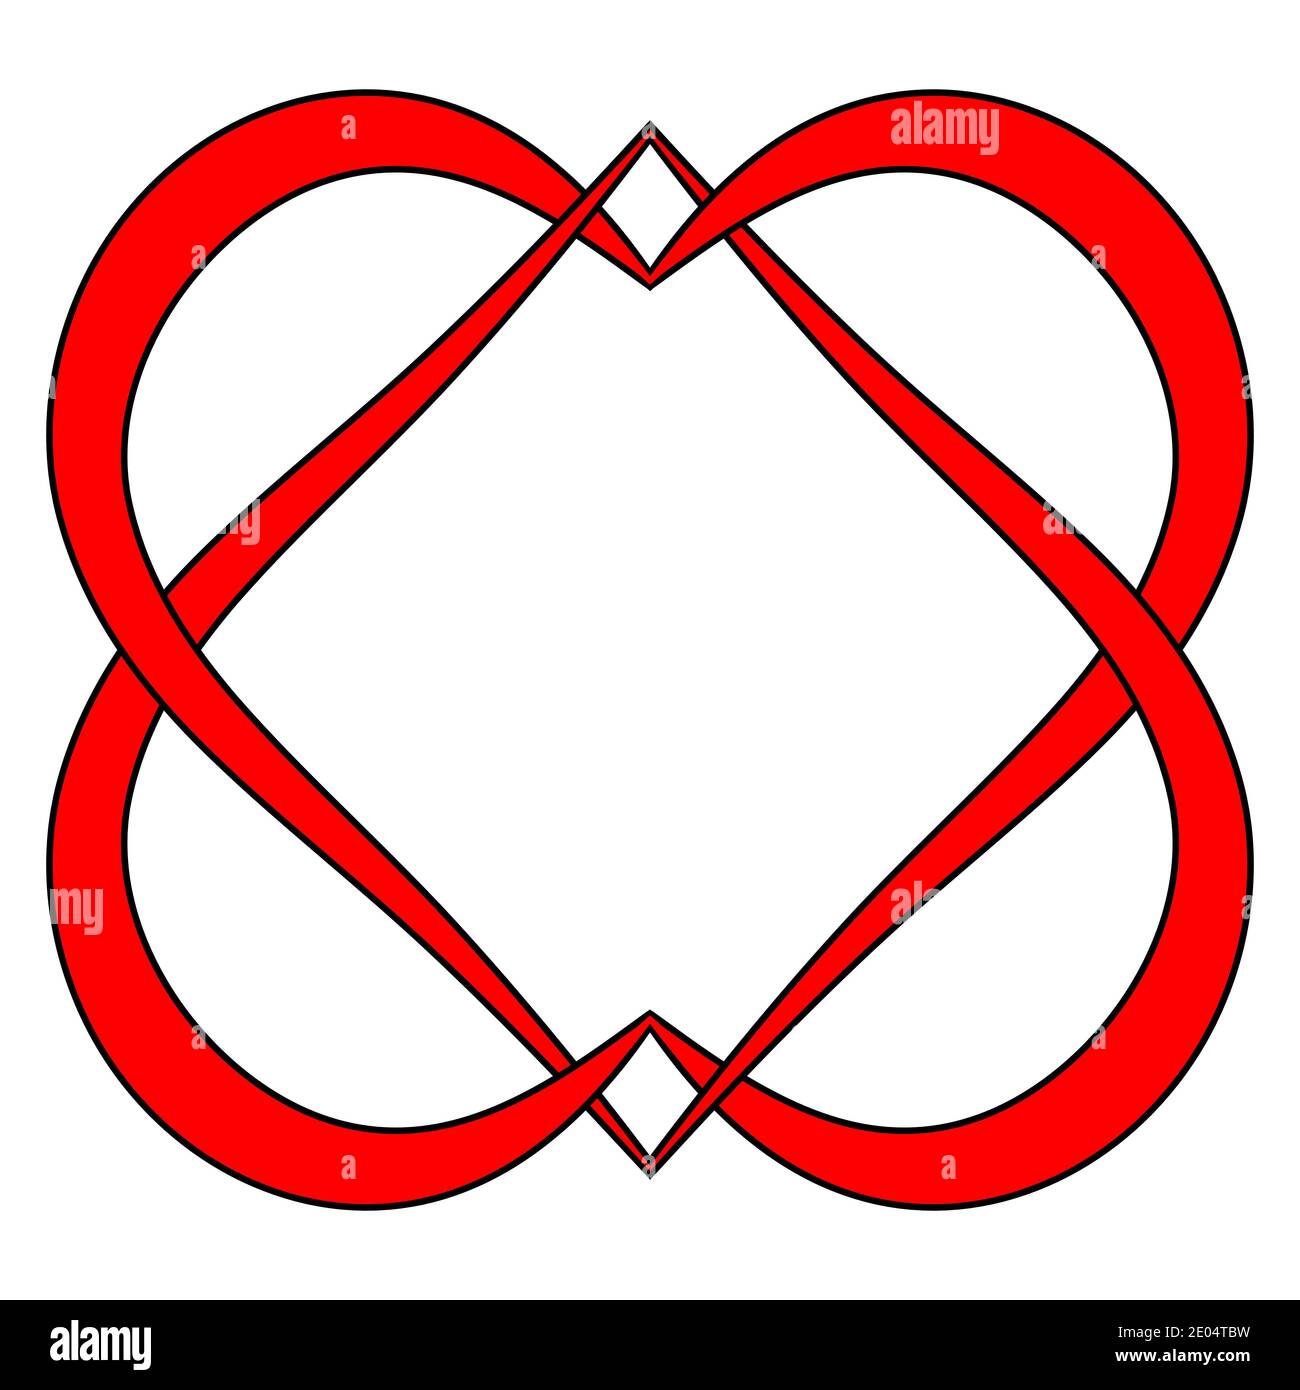 Zwei Herzen Logo Ehe Agentur, Vektor verflochten Herz Zeichen Symbol ewige gegenseitige Liebe und Treue Stock Vektor